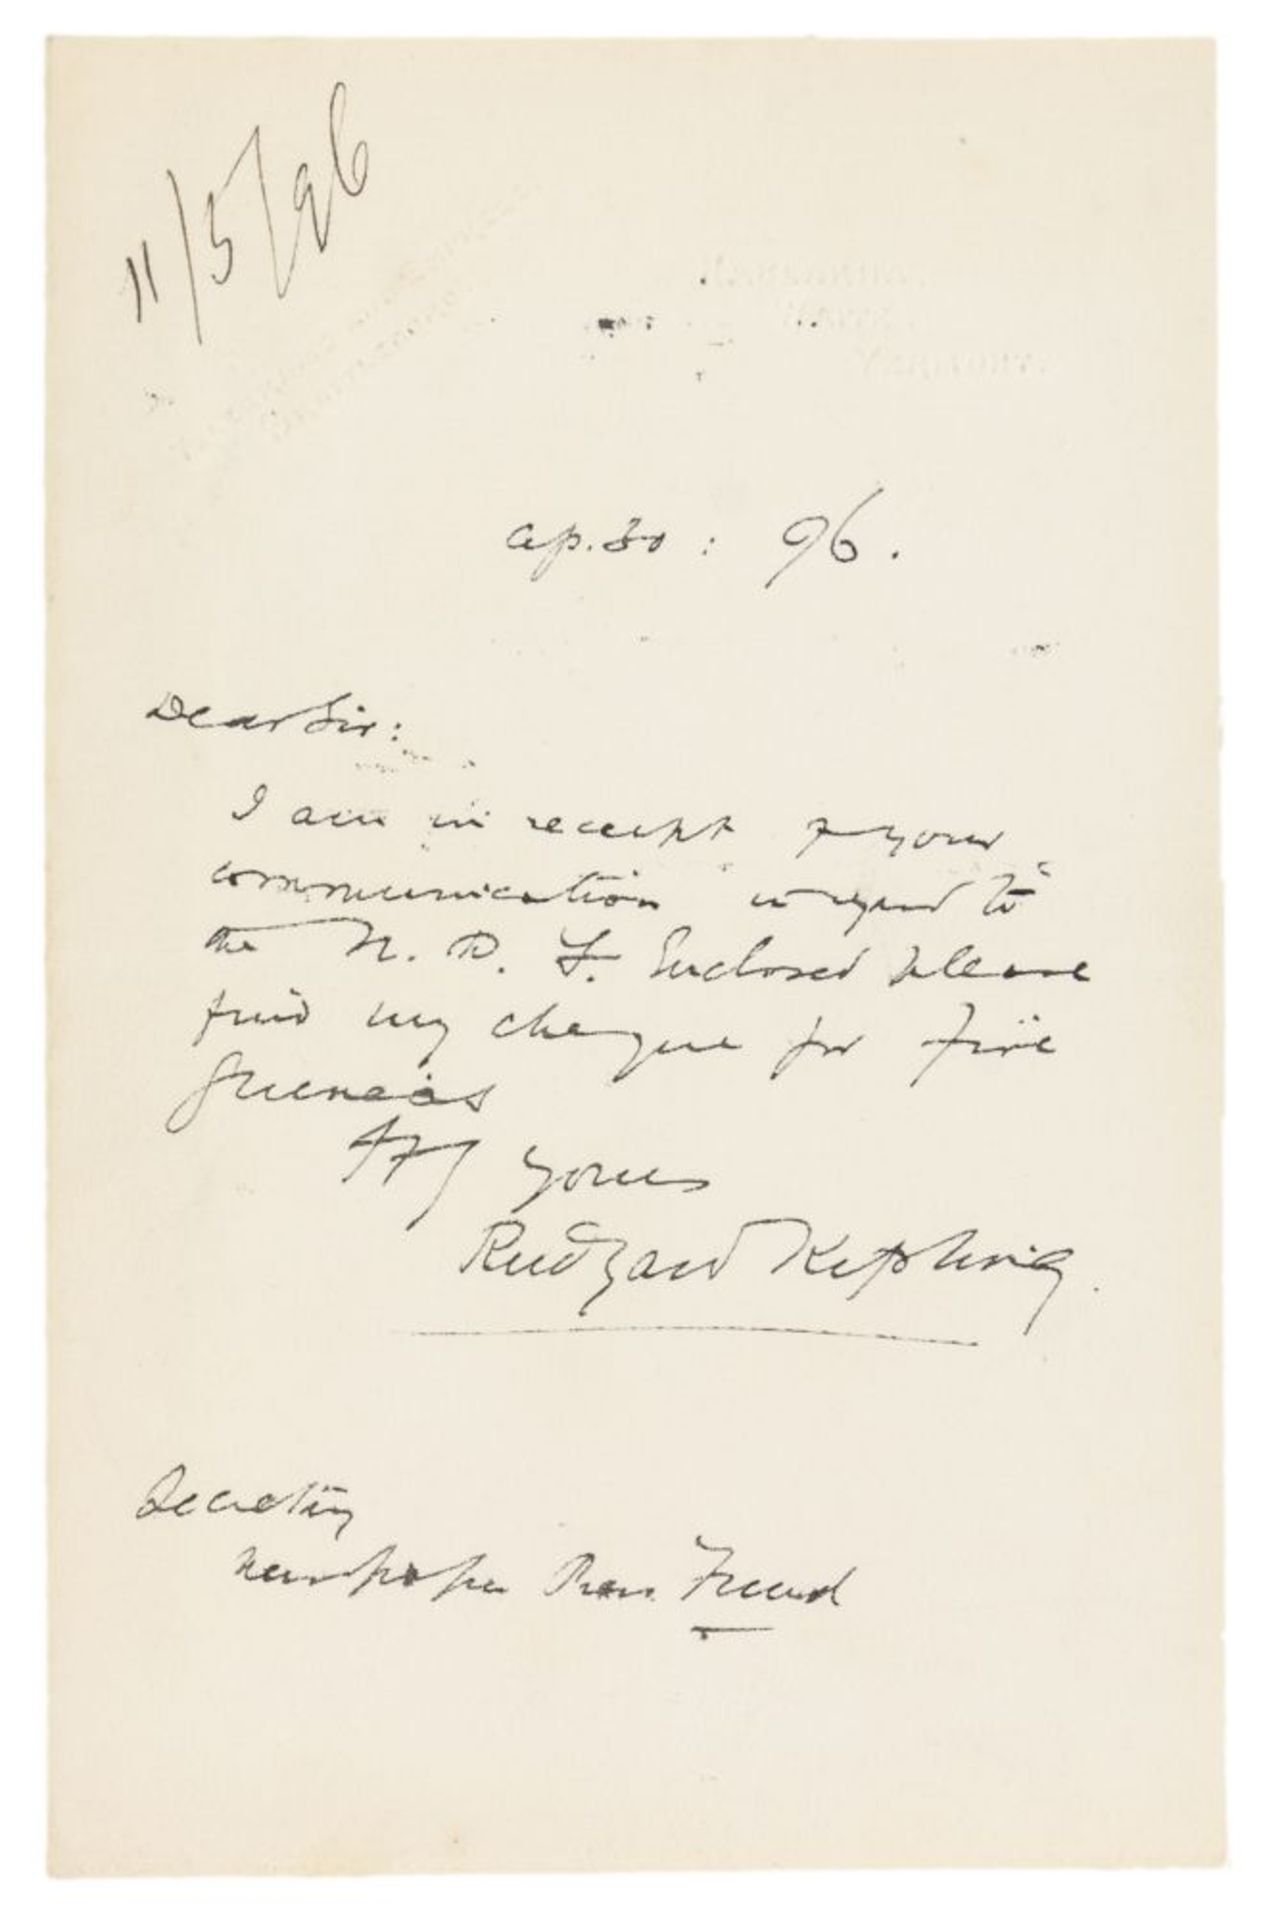 Nobelpreisträger - - Kipling, Rudyard. Brief mit eigenhändigem 10-zeiligen Text und Unterschrift.